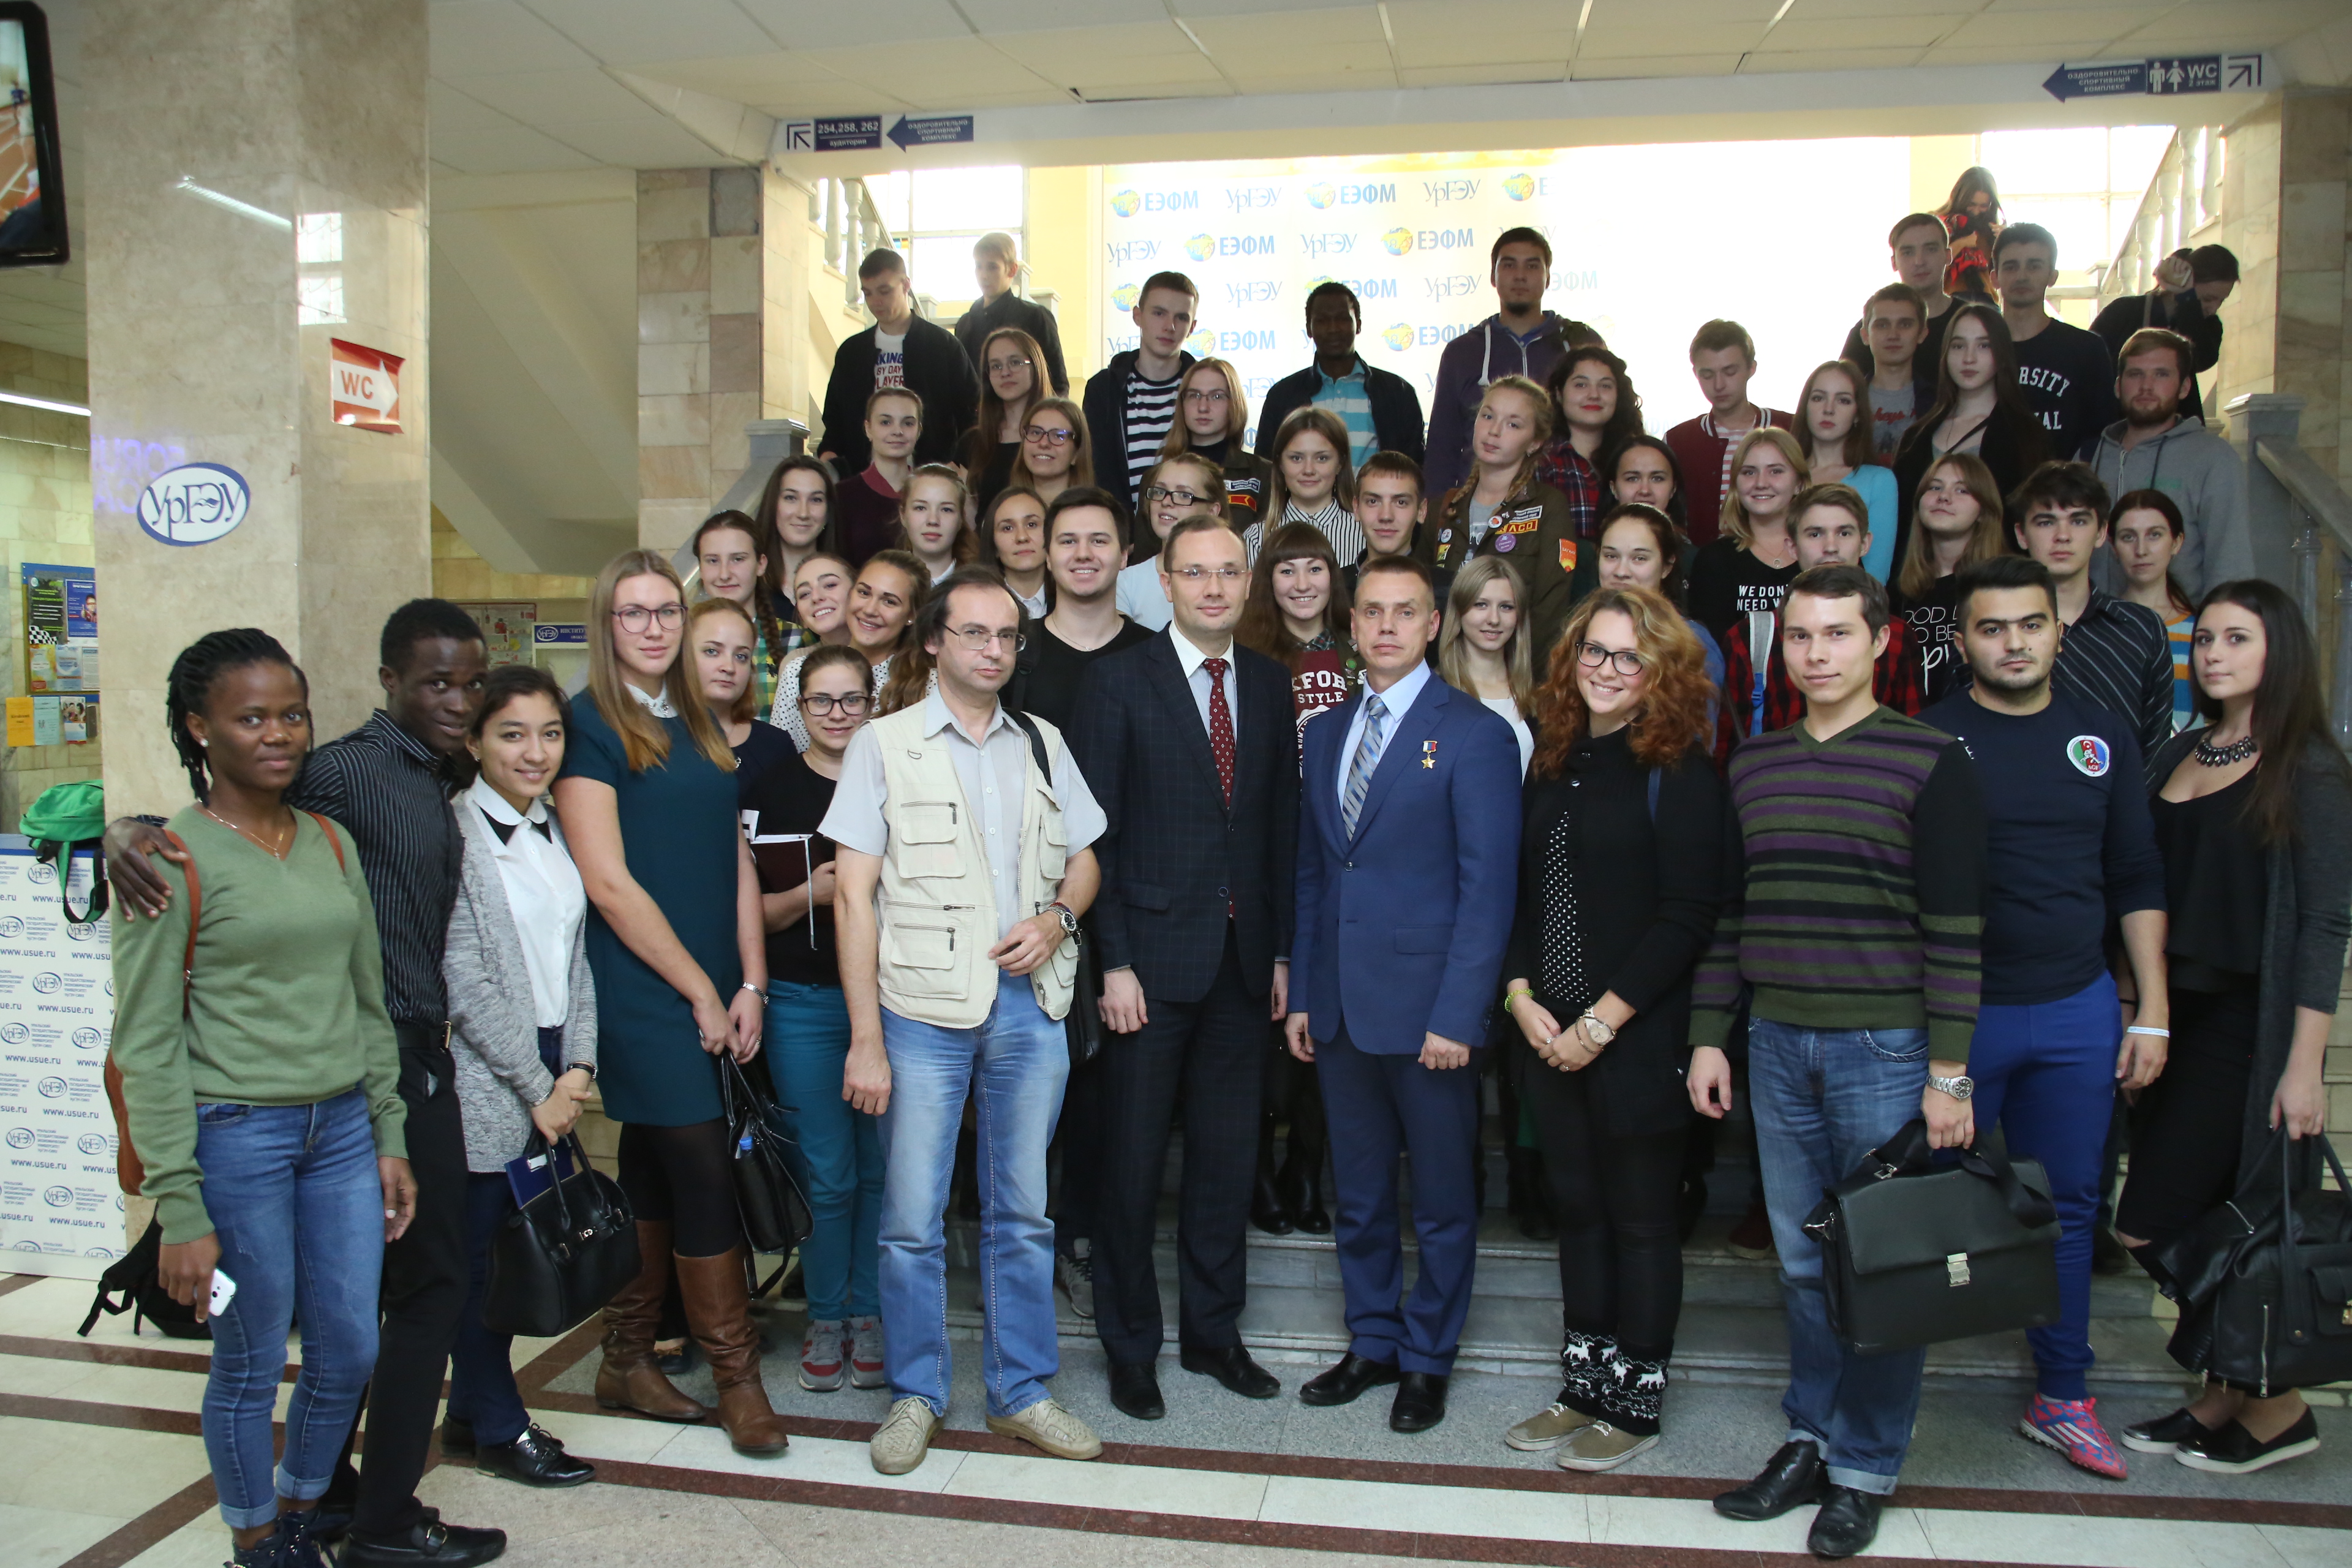 Группа студентов из екатеринбурга занимается. Преподаватели Синха Екатеринбург. Студенты ЕКБ подпись.